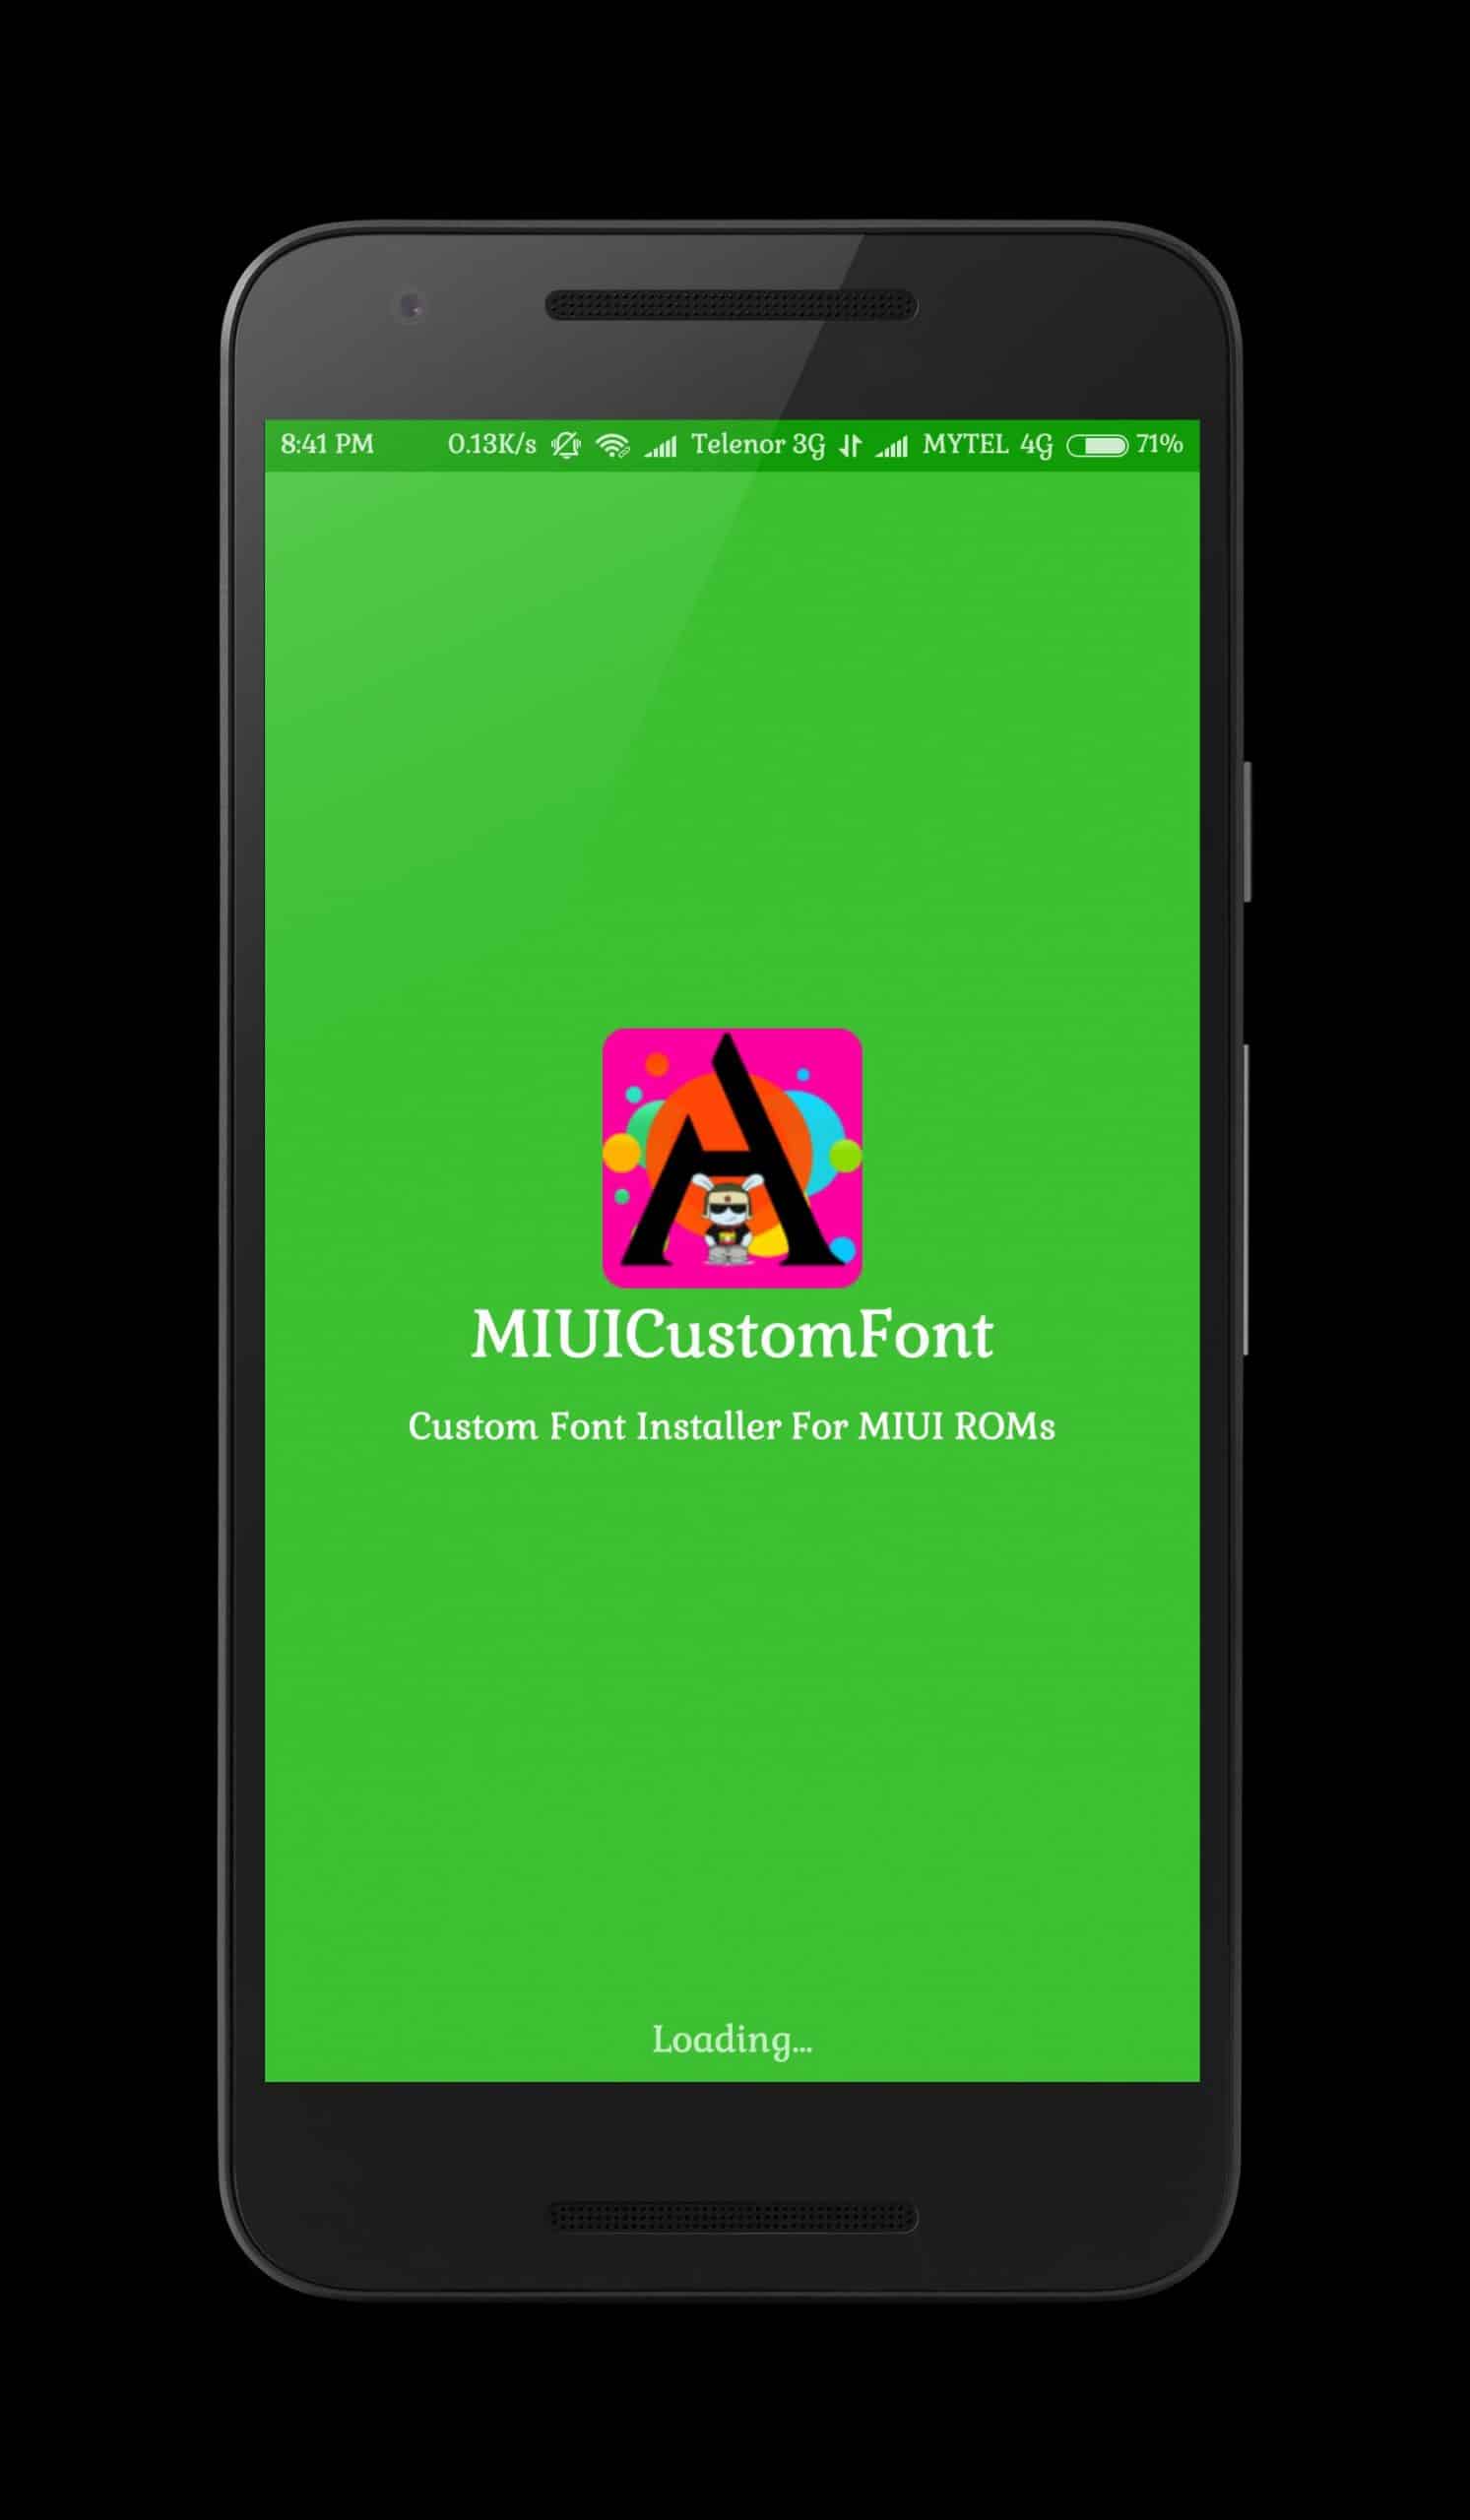 Download aplikasi MIUI Custome Font dan install